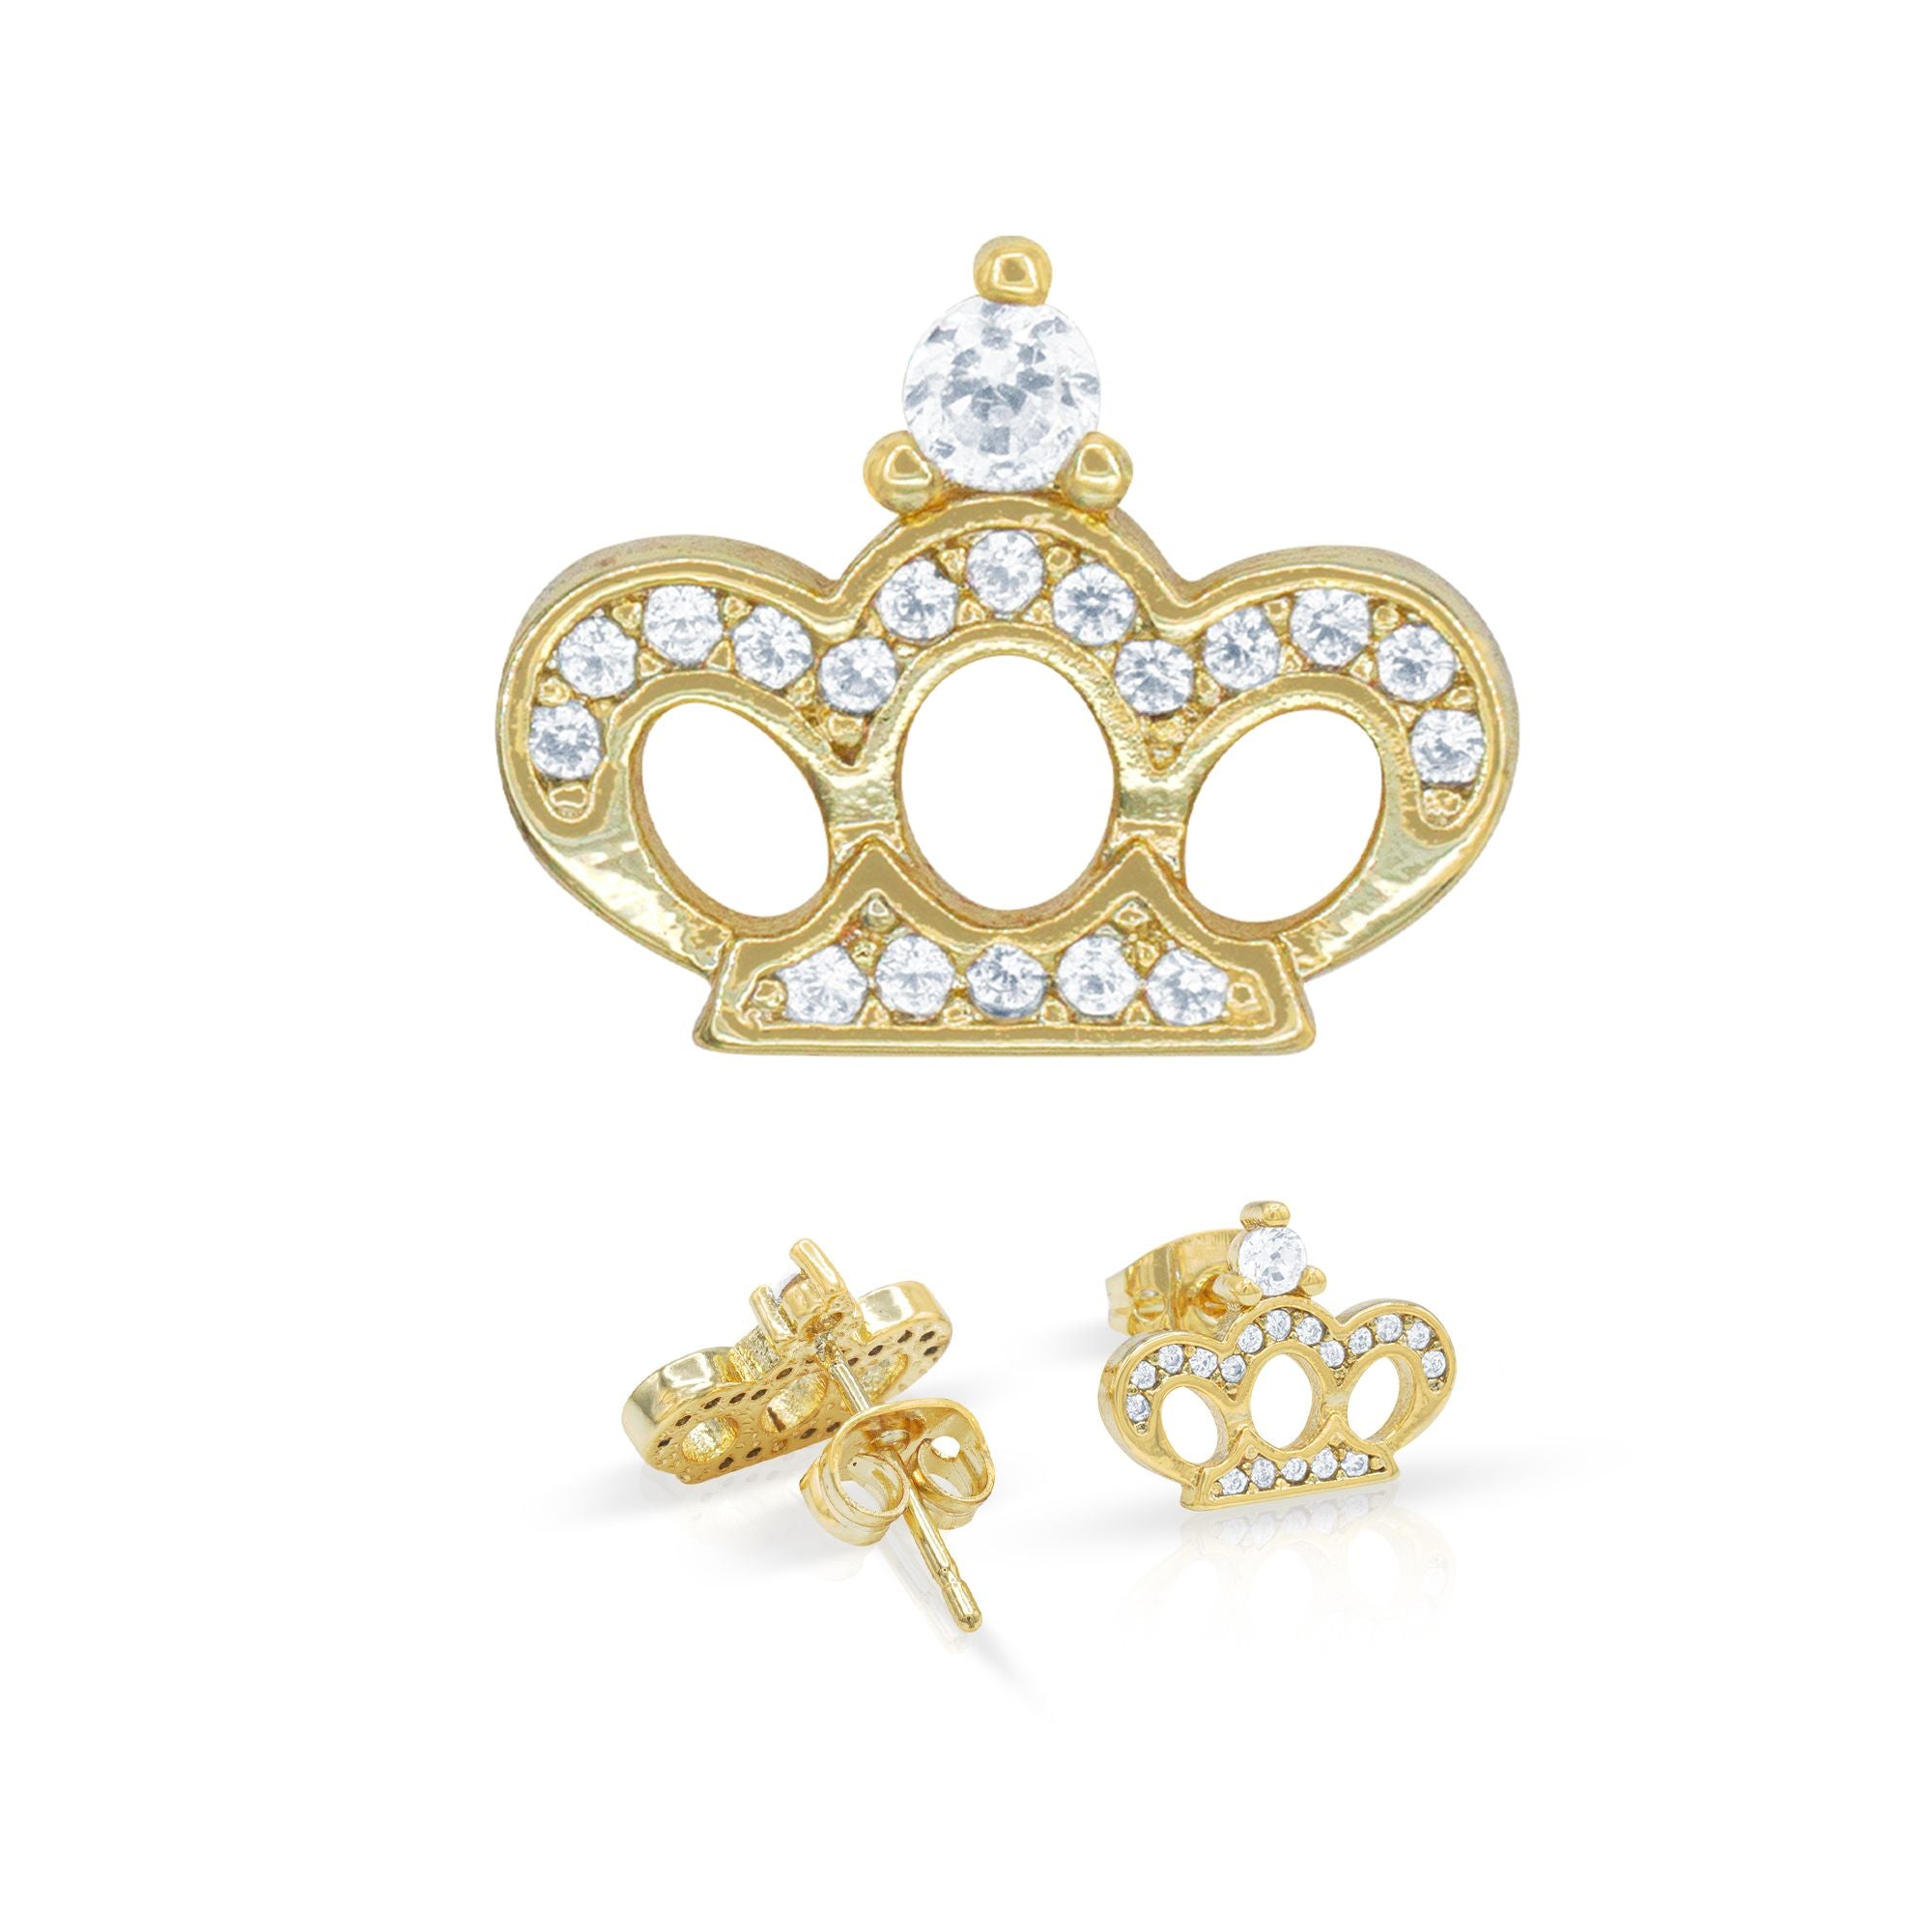 Beberlini Crown 14K Gold Filled Earrings Cubic Zirconia Hip Hop Studs Ear Piercing Fashion Jewelry Women 12mm, Women's, Size: Small